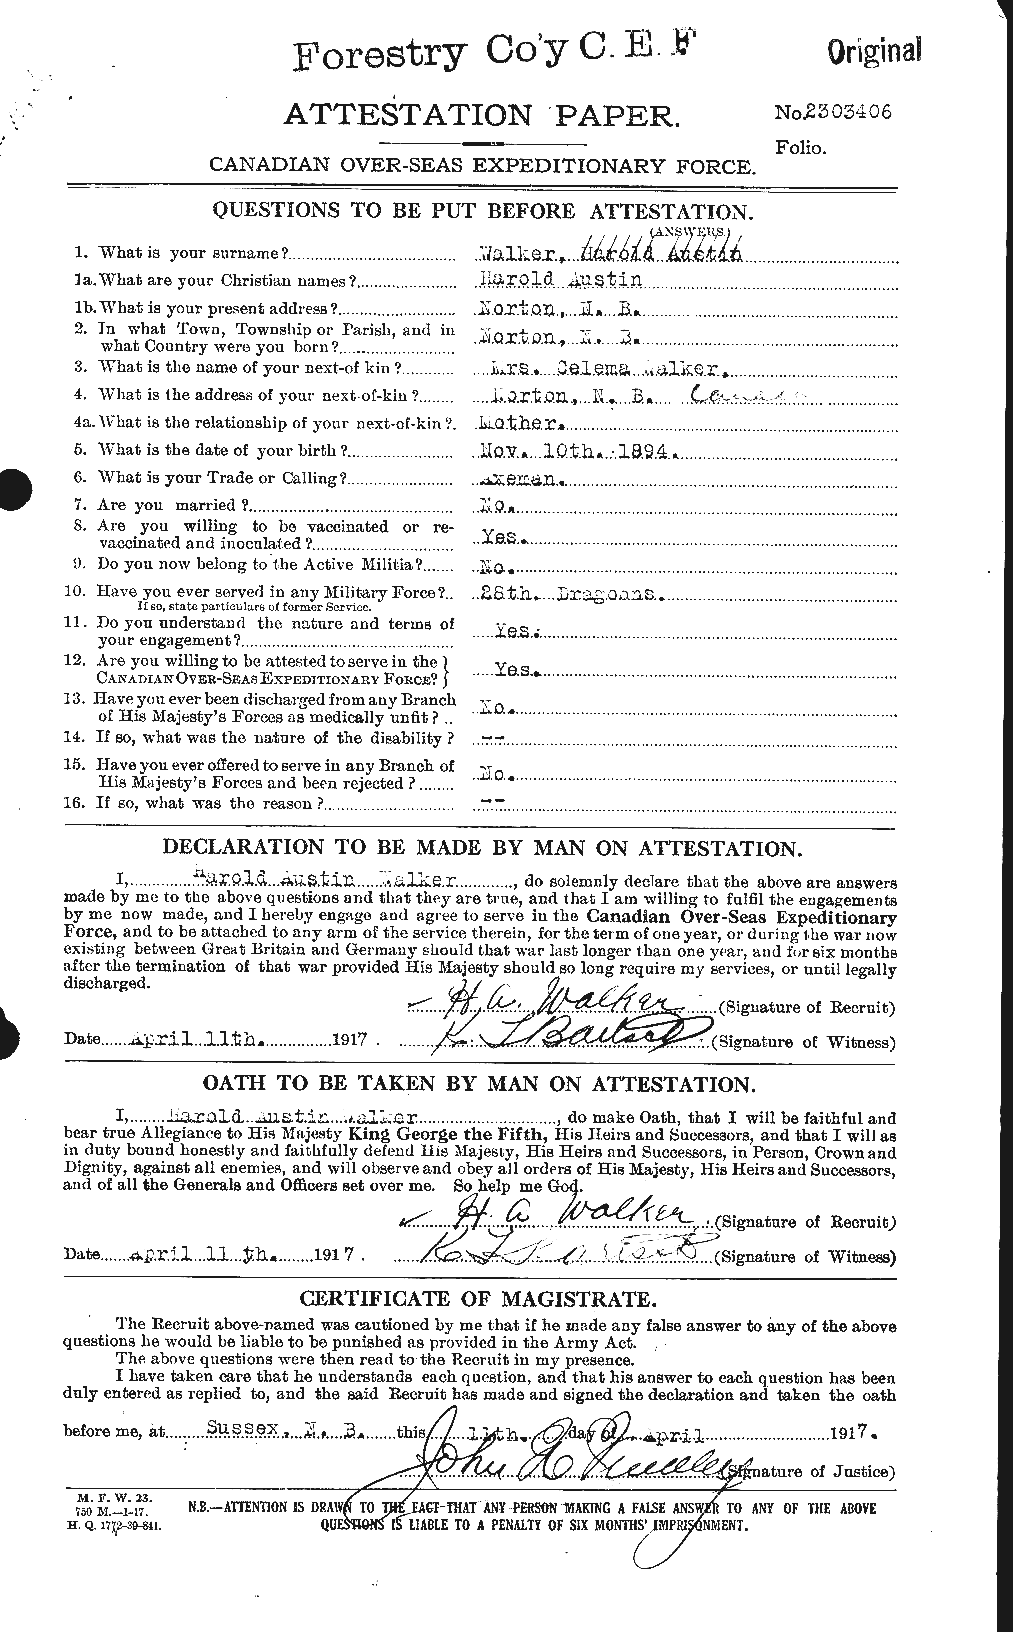 Dossiers du Personnel de la Première Guerre mondiale - CEC 652818a